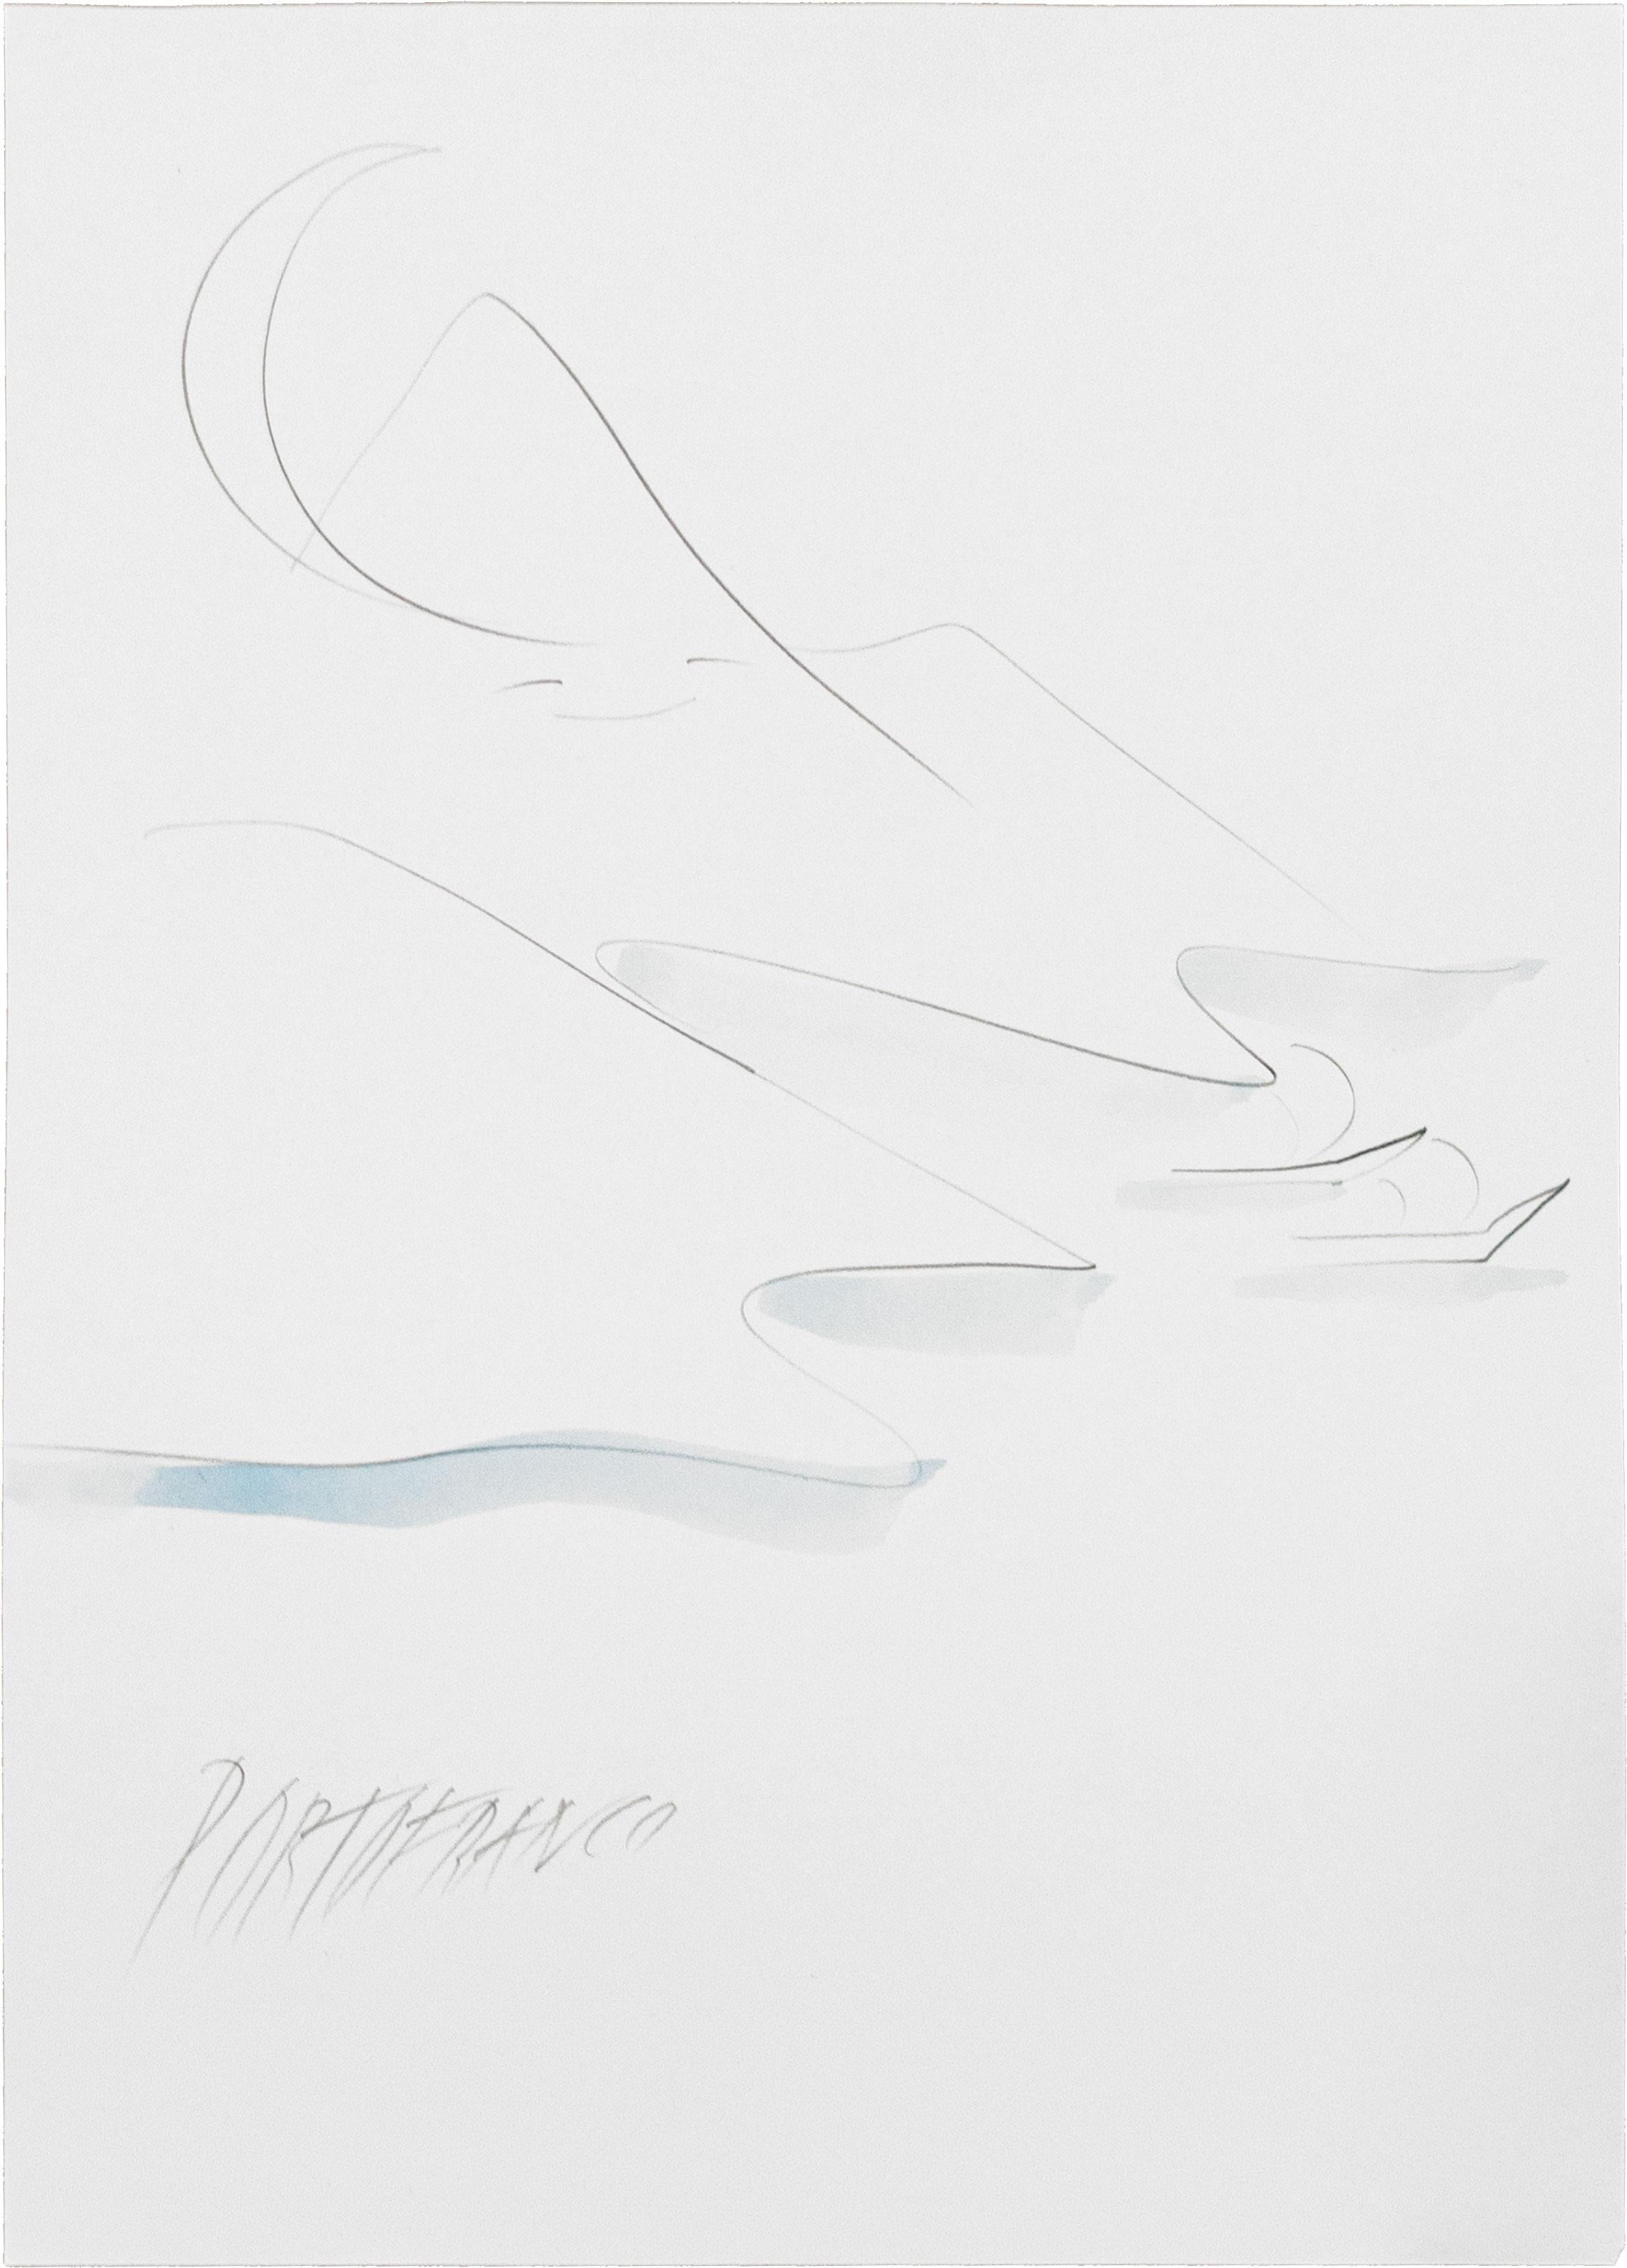 Senza Titolo, ca. 2000, Disegno su carta, Illustrazioni a penna, Acquerelli - Gray Figurative Art by Lisa Ponti